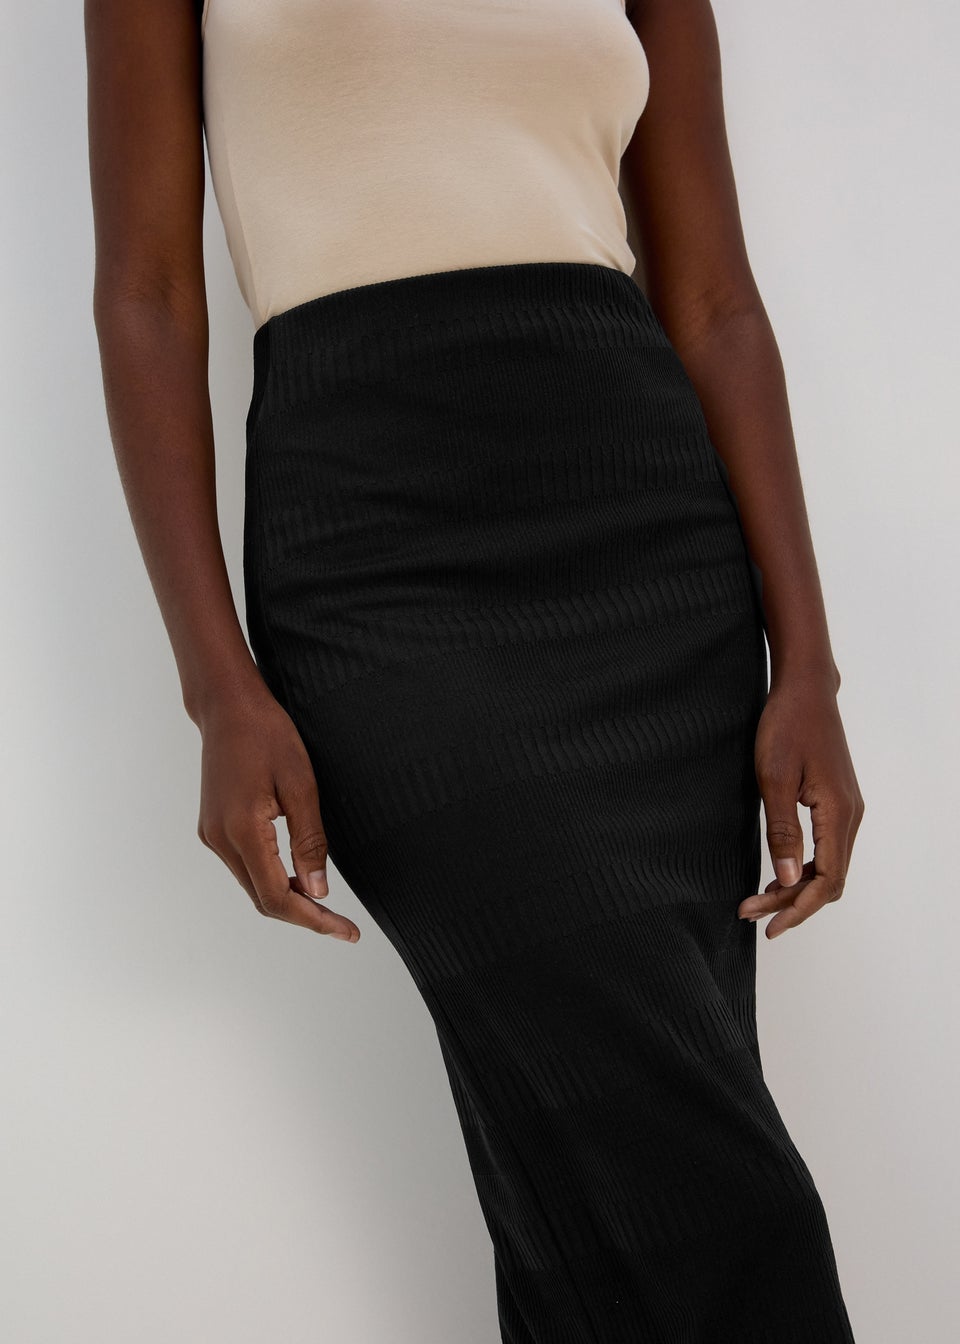 Black Textured Midi Skirt